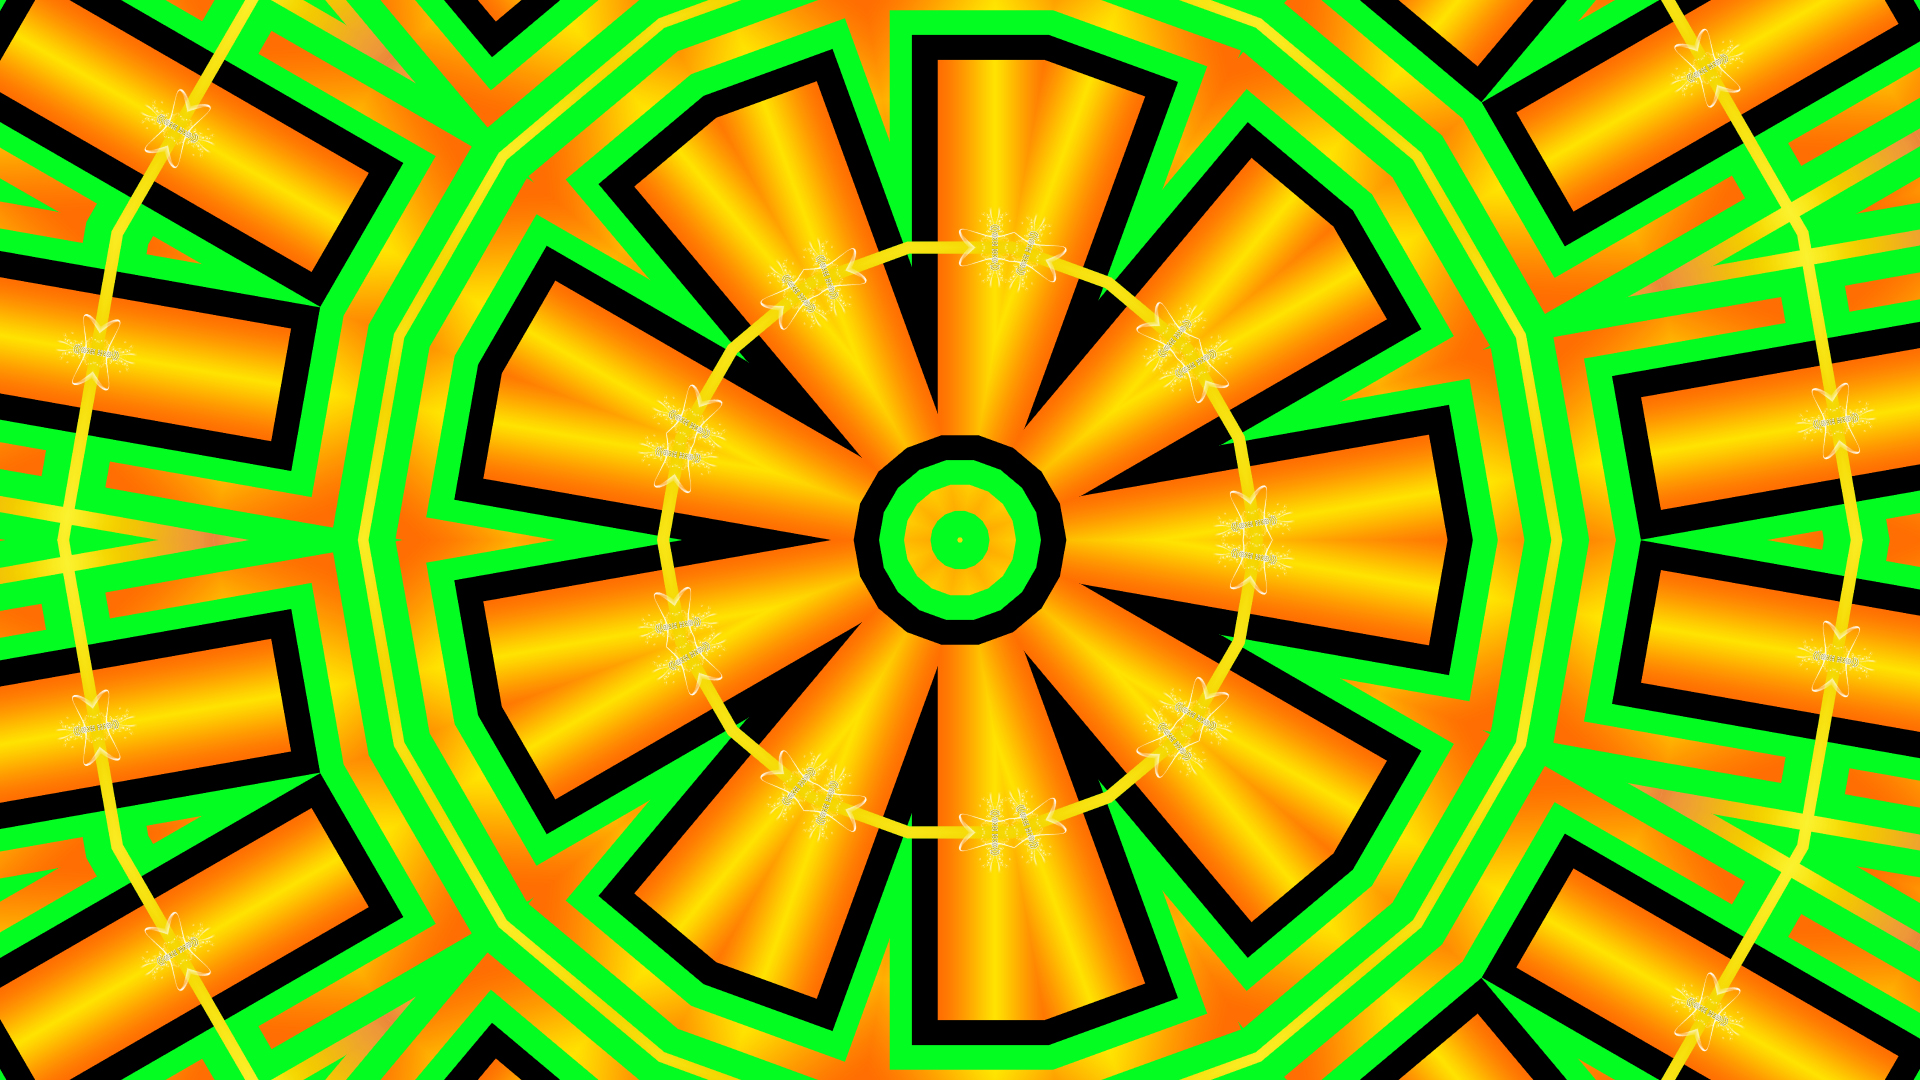 Скачать обои бесплатно Форма, Цвета, Зеленый, Калейдоскоп, Шаблоны, Абстрактные, Оранжевый Цвет) картинка на рабочий стол ПК